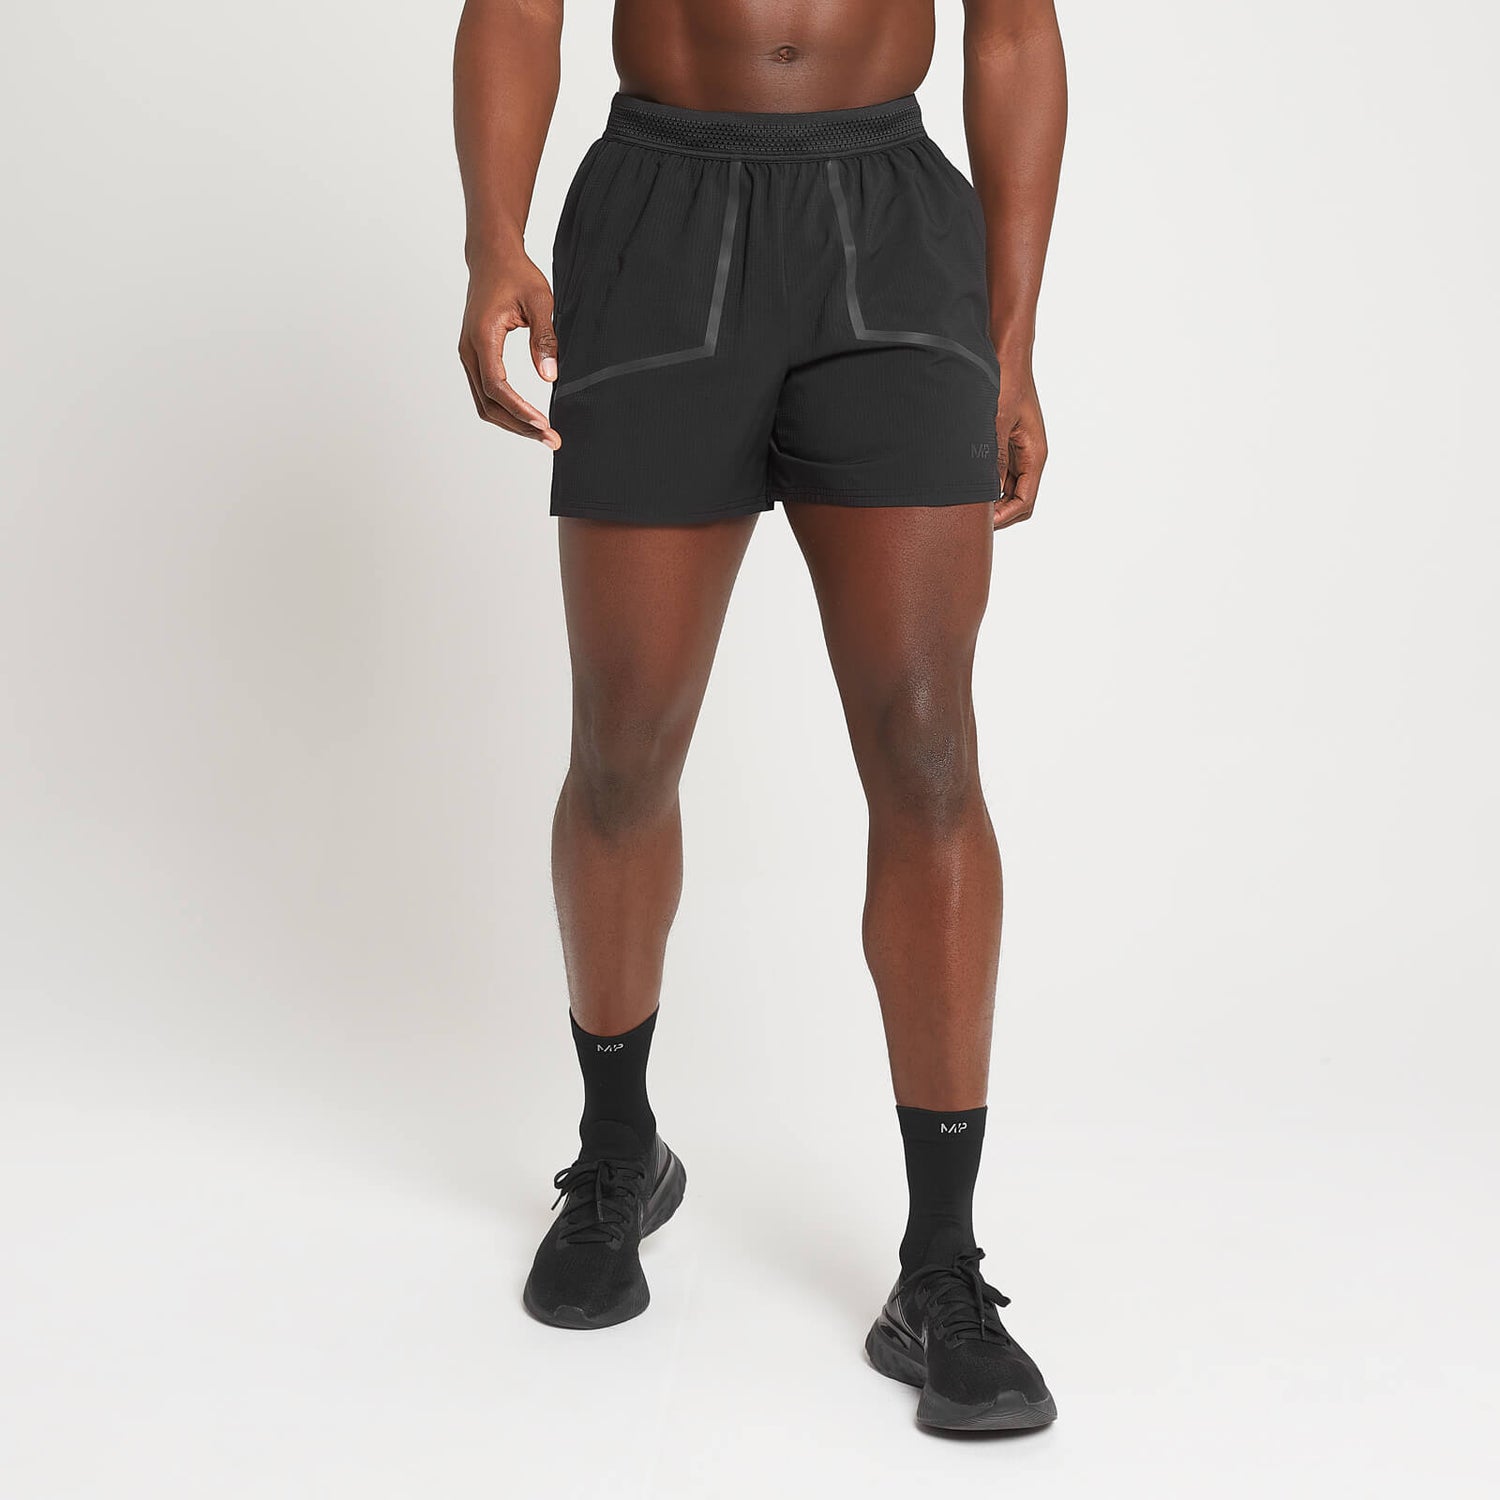 Pantalón corto Velocity Ultra con tiro de 12,7 cm para hombre de MP - Negro - S